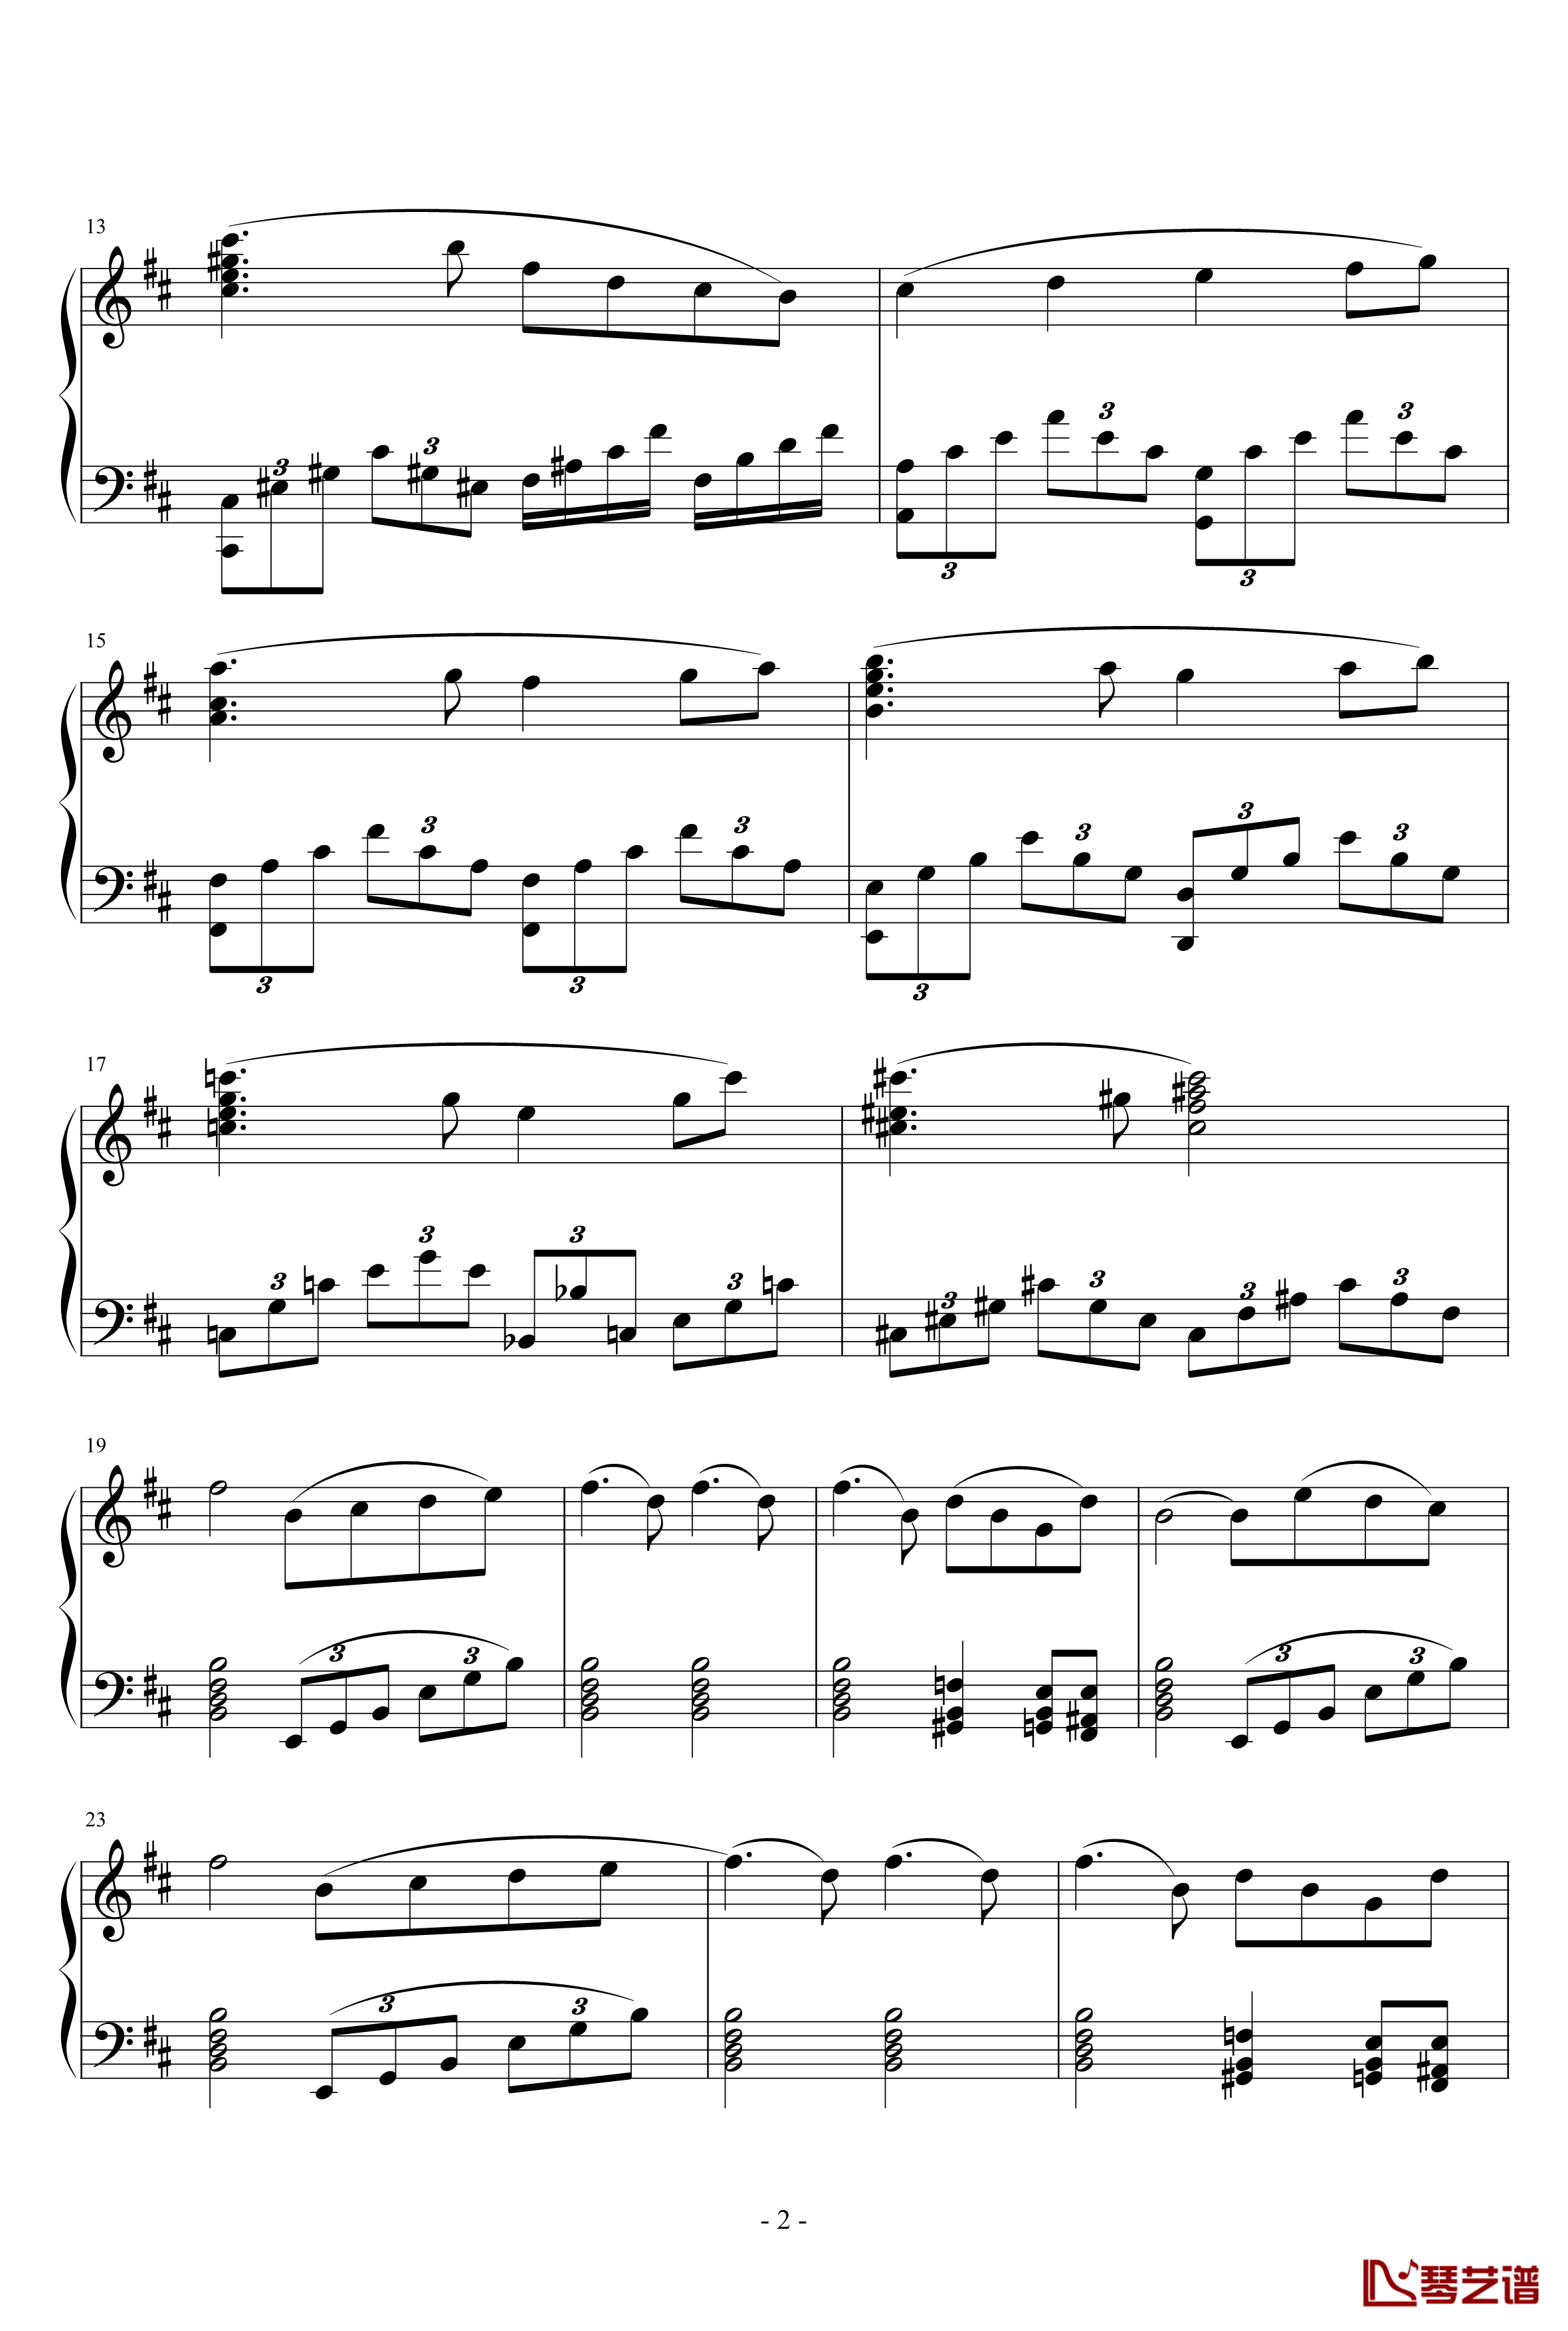 天鹅湖场景旋律钢琴谱-柴科夫斯基-Peter Ilyich Tchaikovsky2